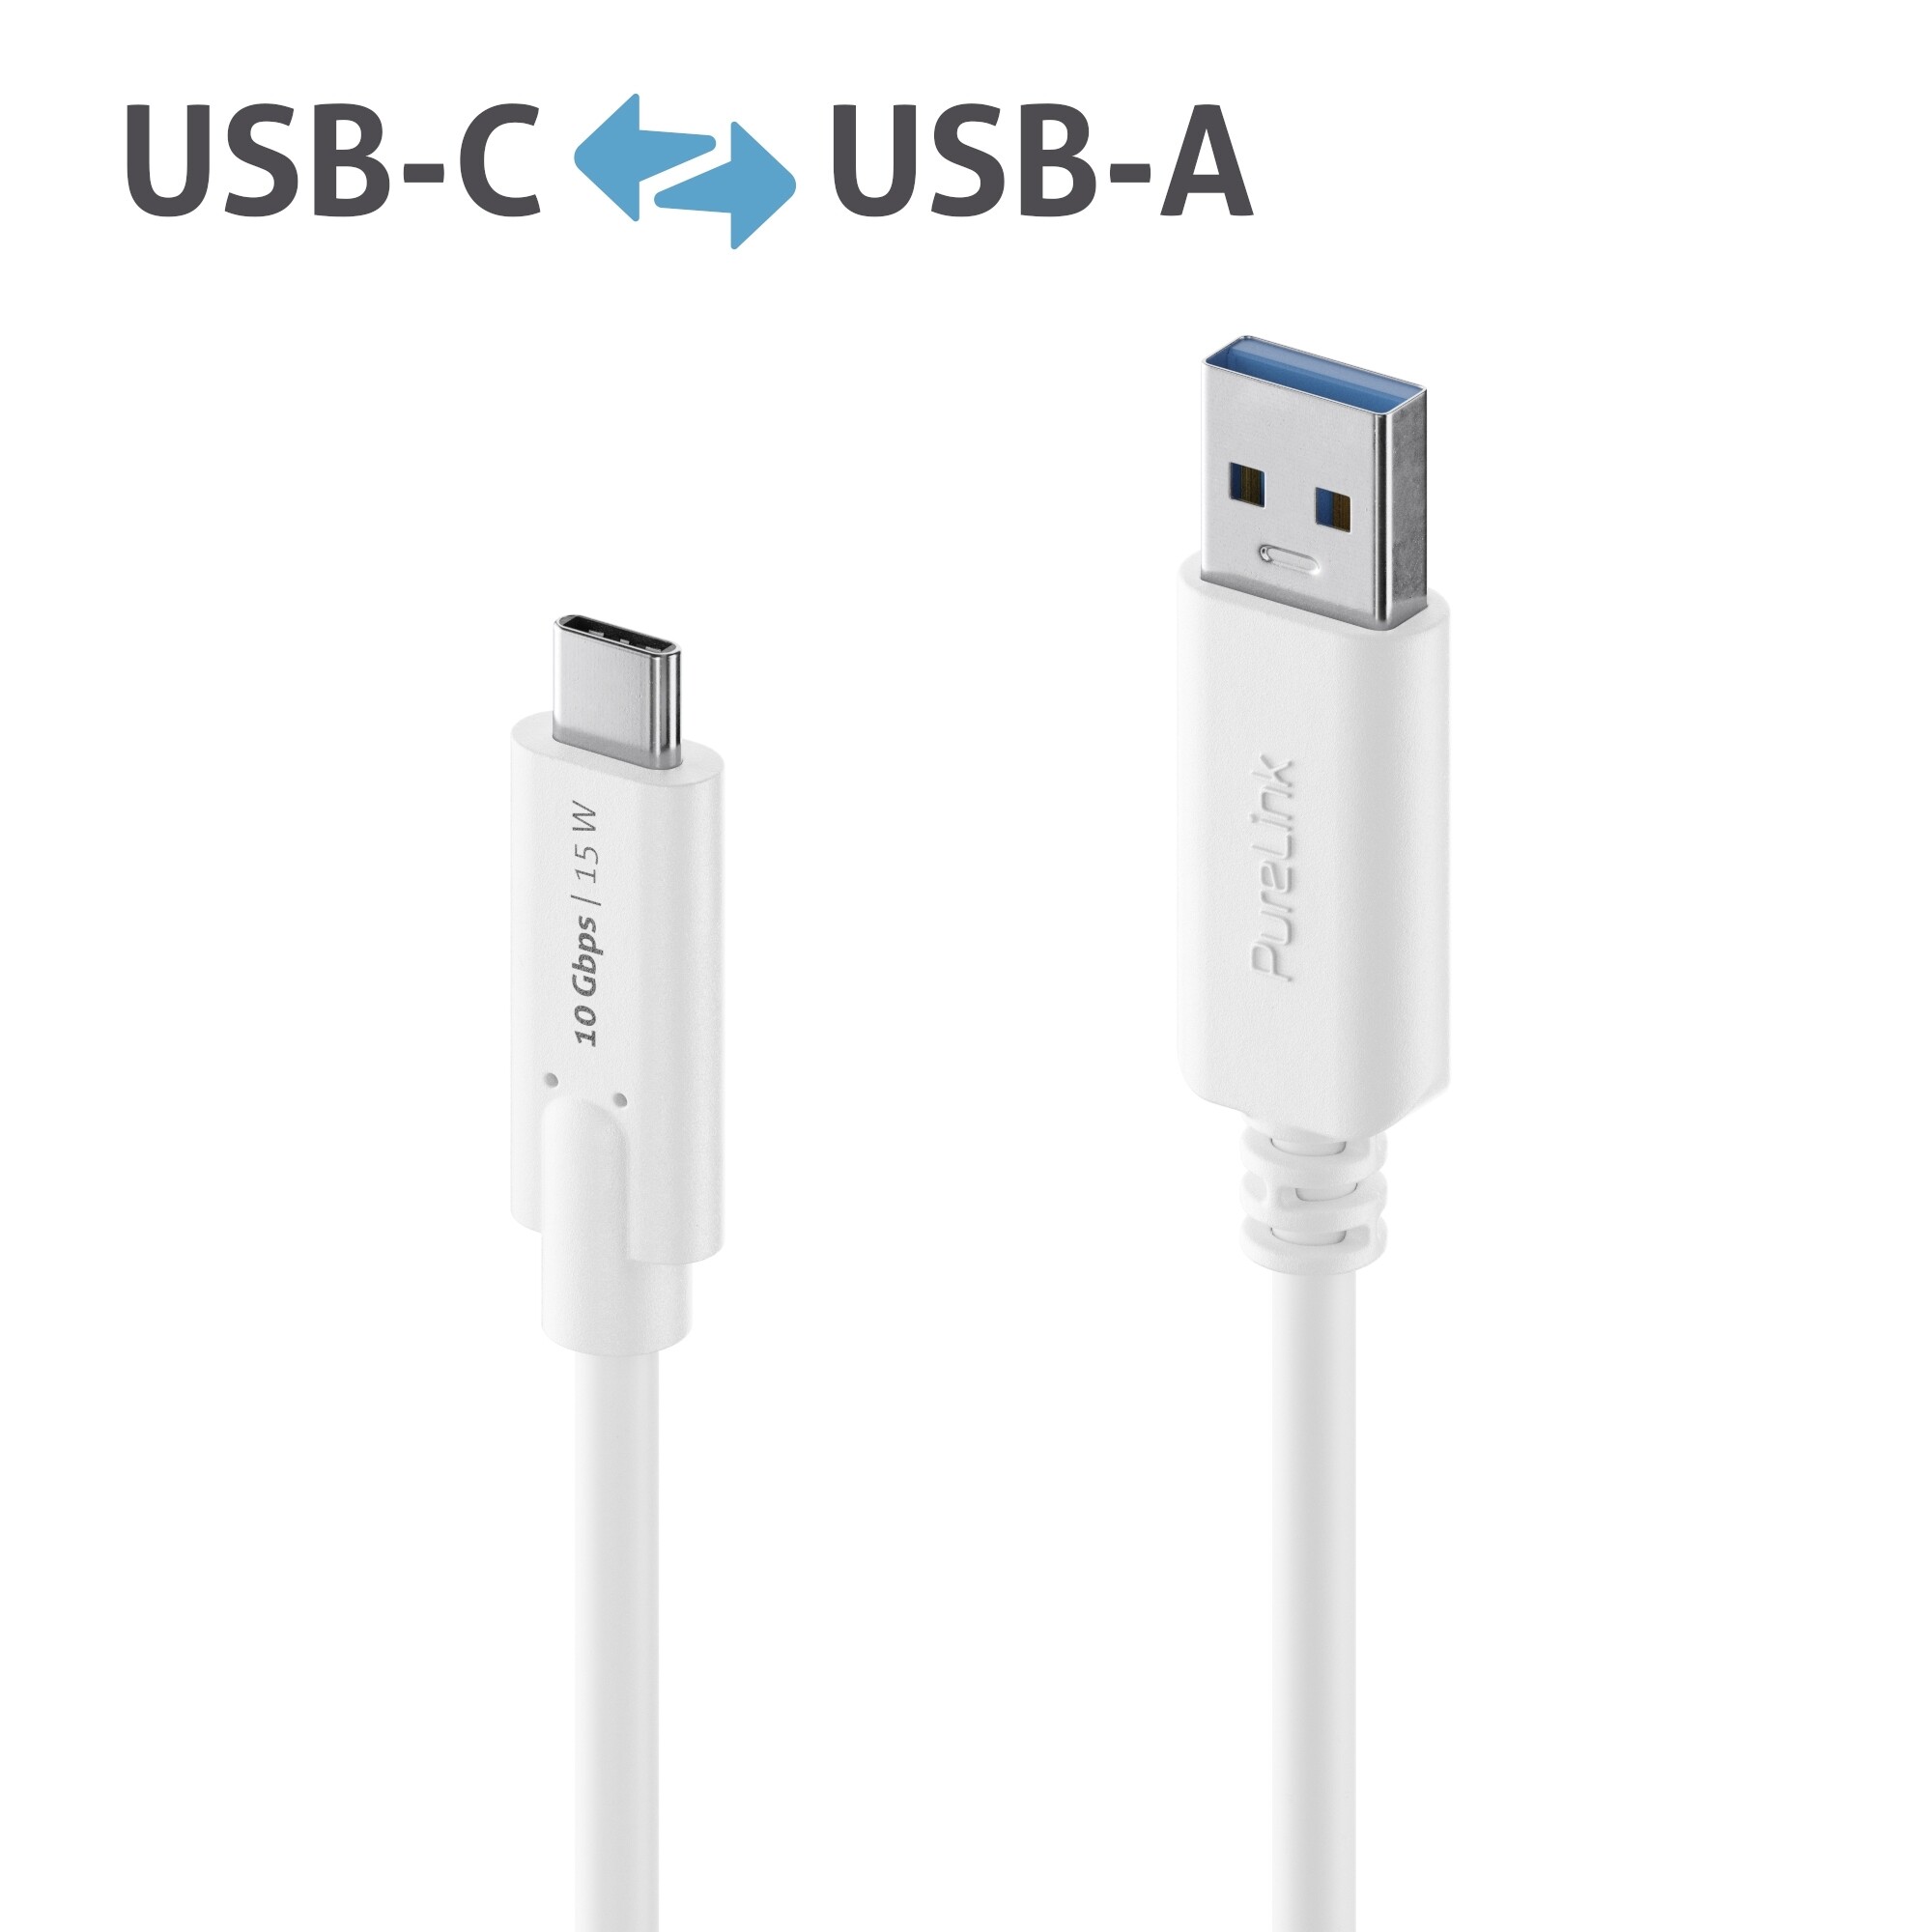 PURELINK iSeries Premium - USB-Kabel - USB-C (M) bis USB Typ A (M) - USB 3.1 Gen 2 - 50 cm - rund -